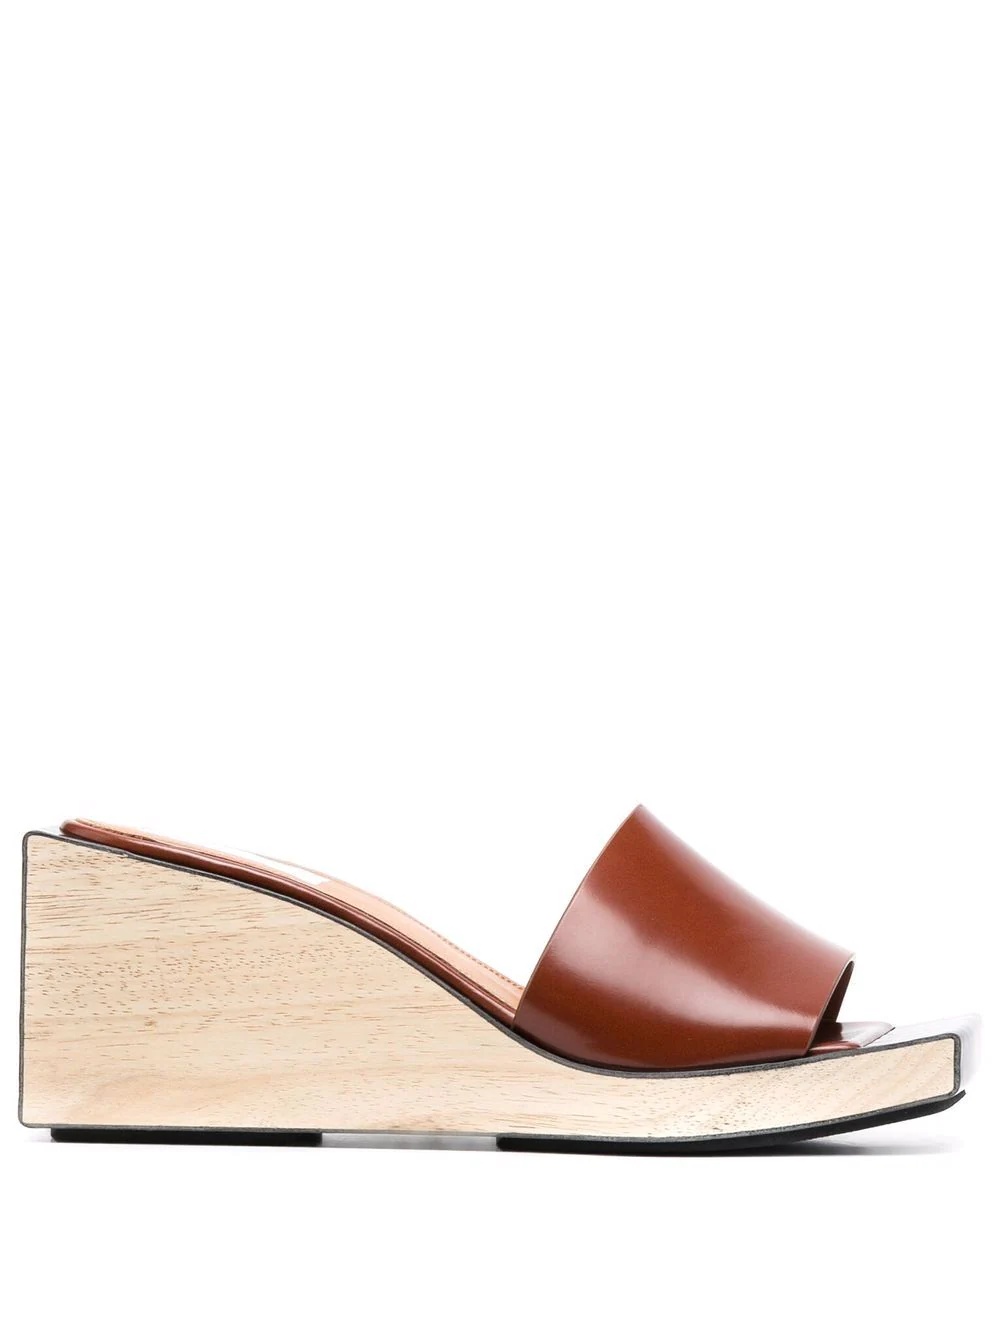 open-toe wedge sandals - 1